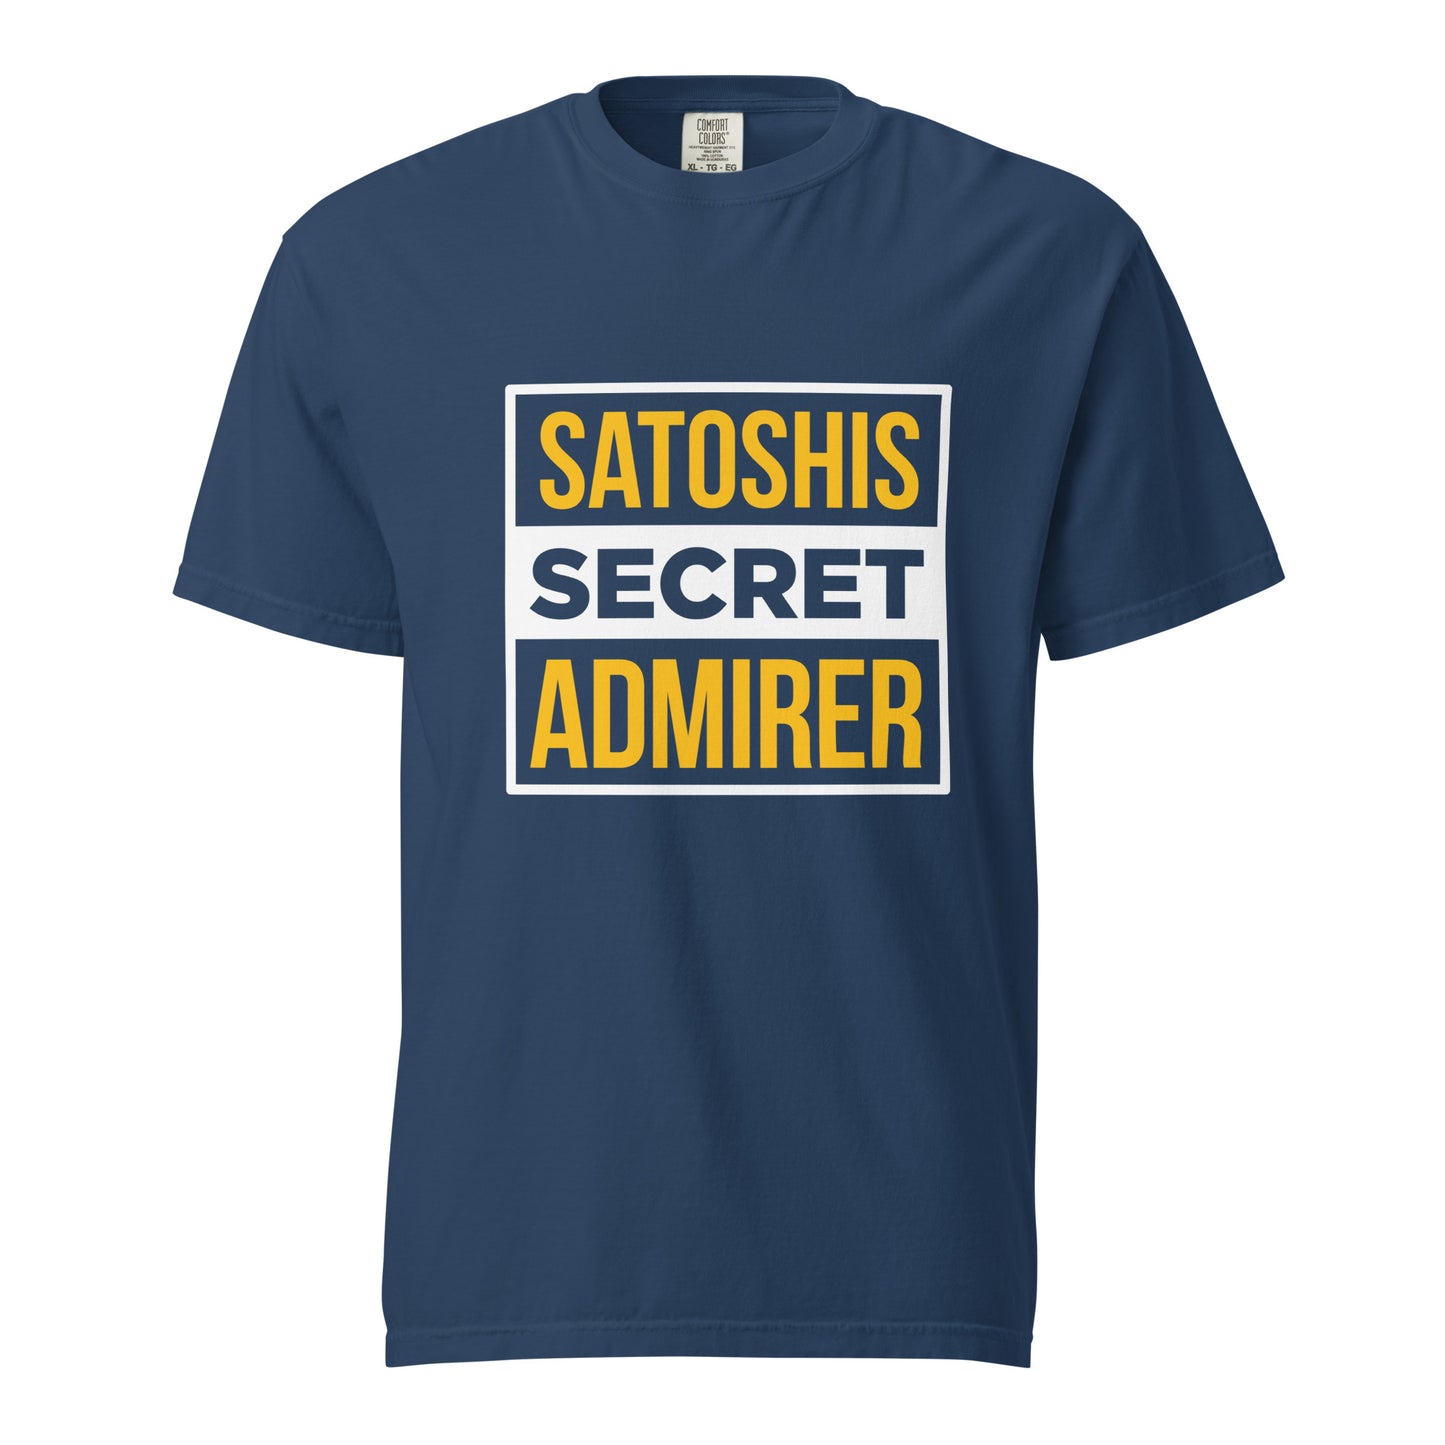 Satoshi's secret admirer heavyweight t-shirt